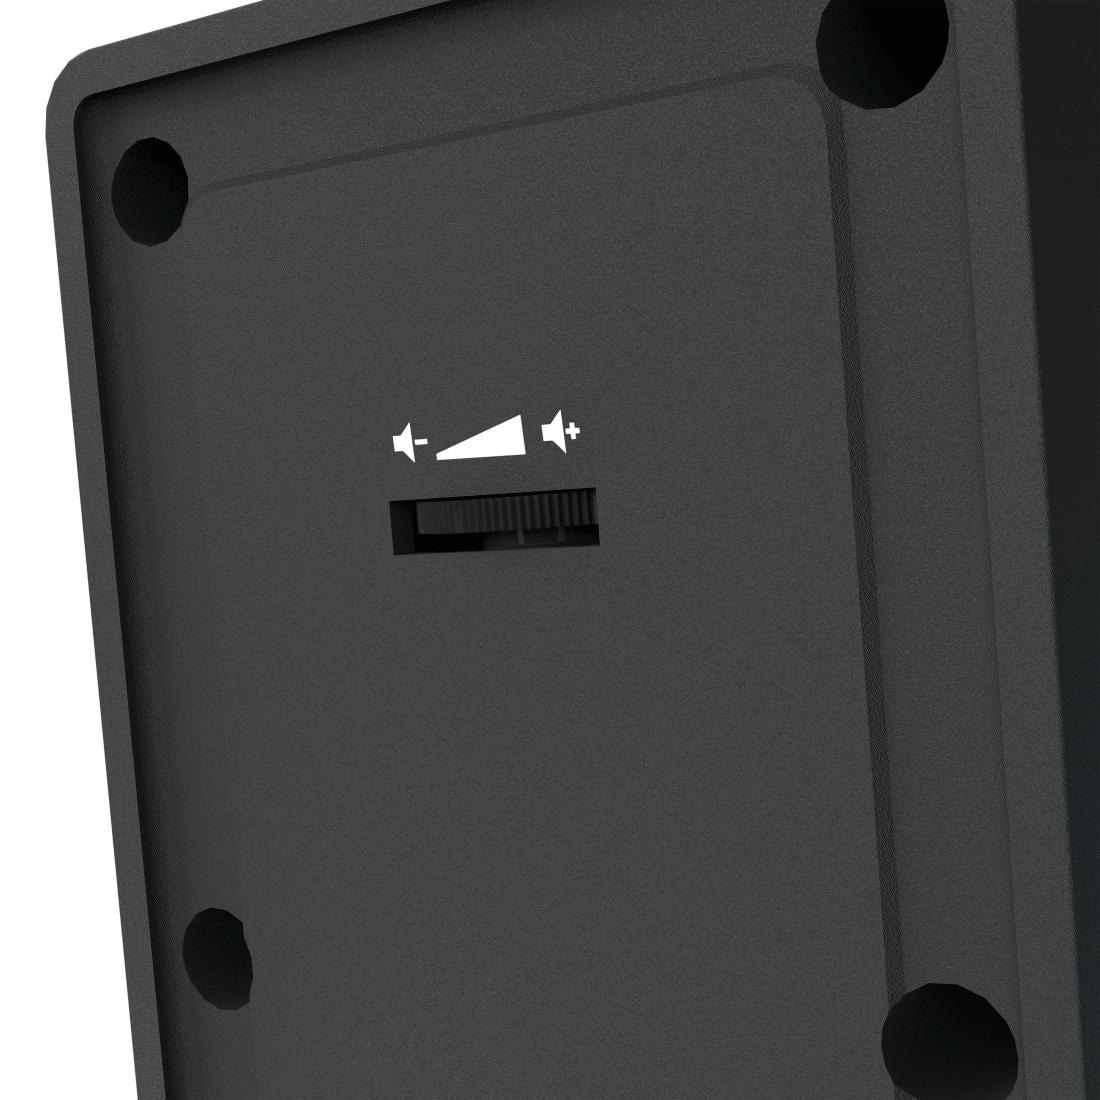 Hama PC-Lautsprecher »PC Lautsprecher Boxen Set für PC oder Notebook, Farbe Schwarz«, Lautsprecherregelung, 3,5 mm Klinkenstecker, externes Netzteil